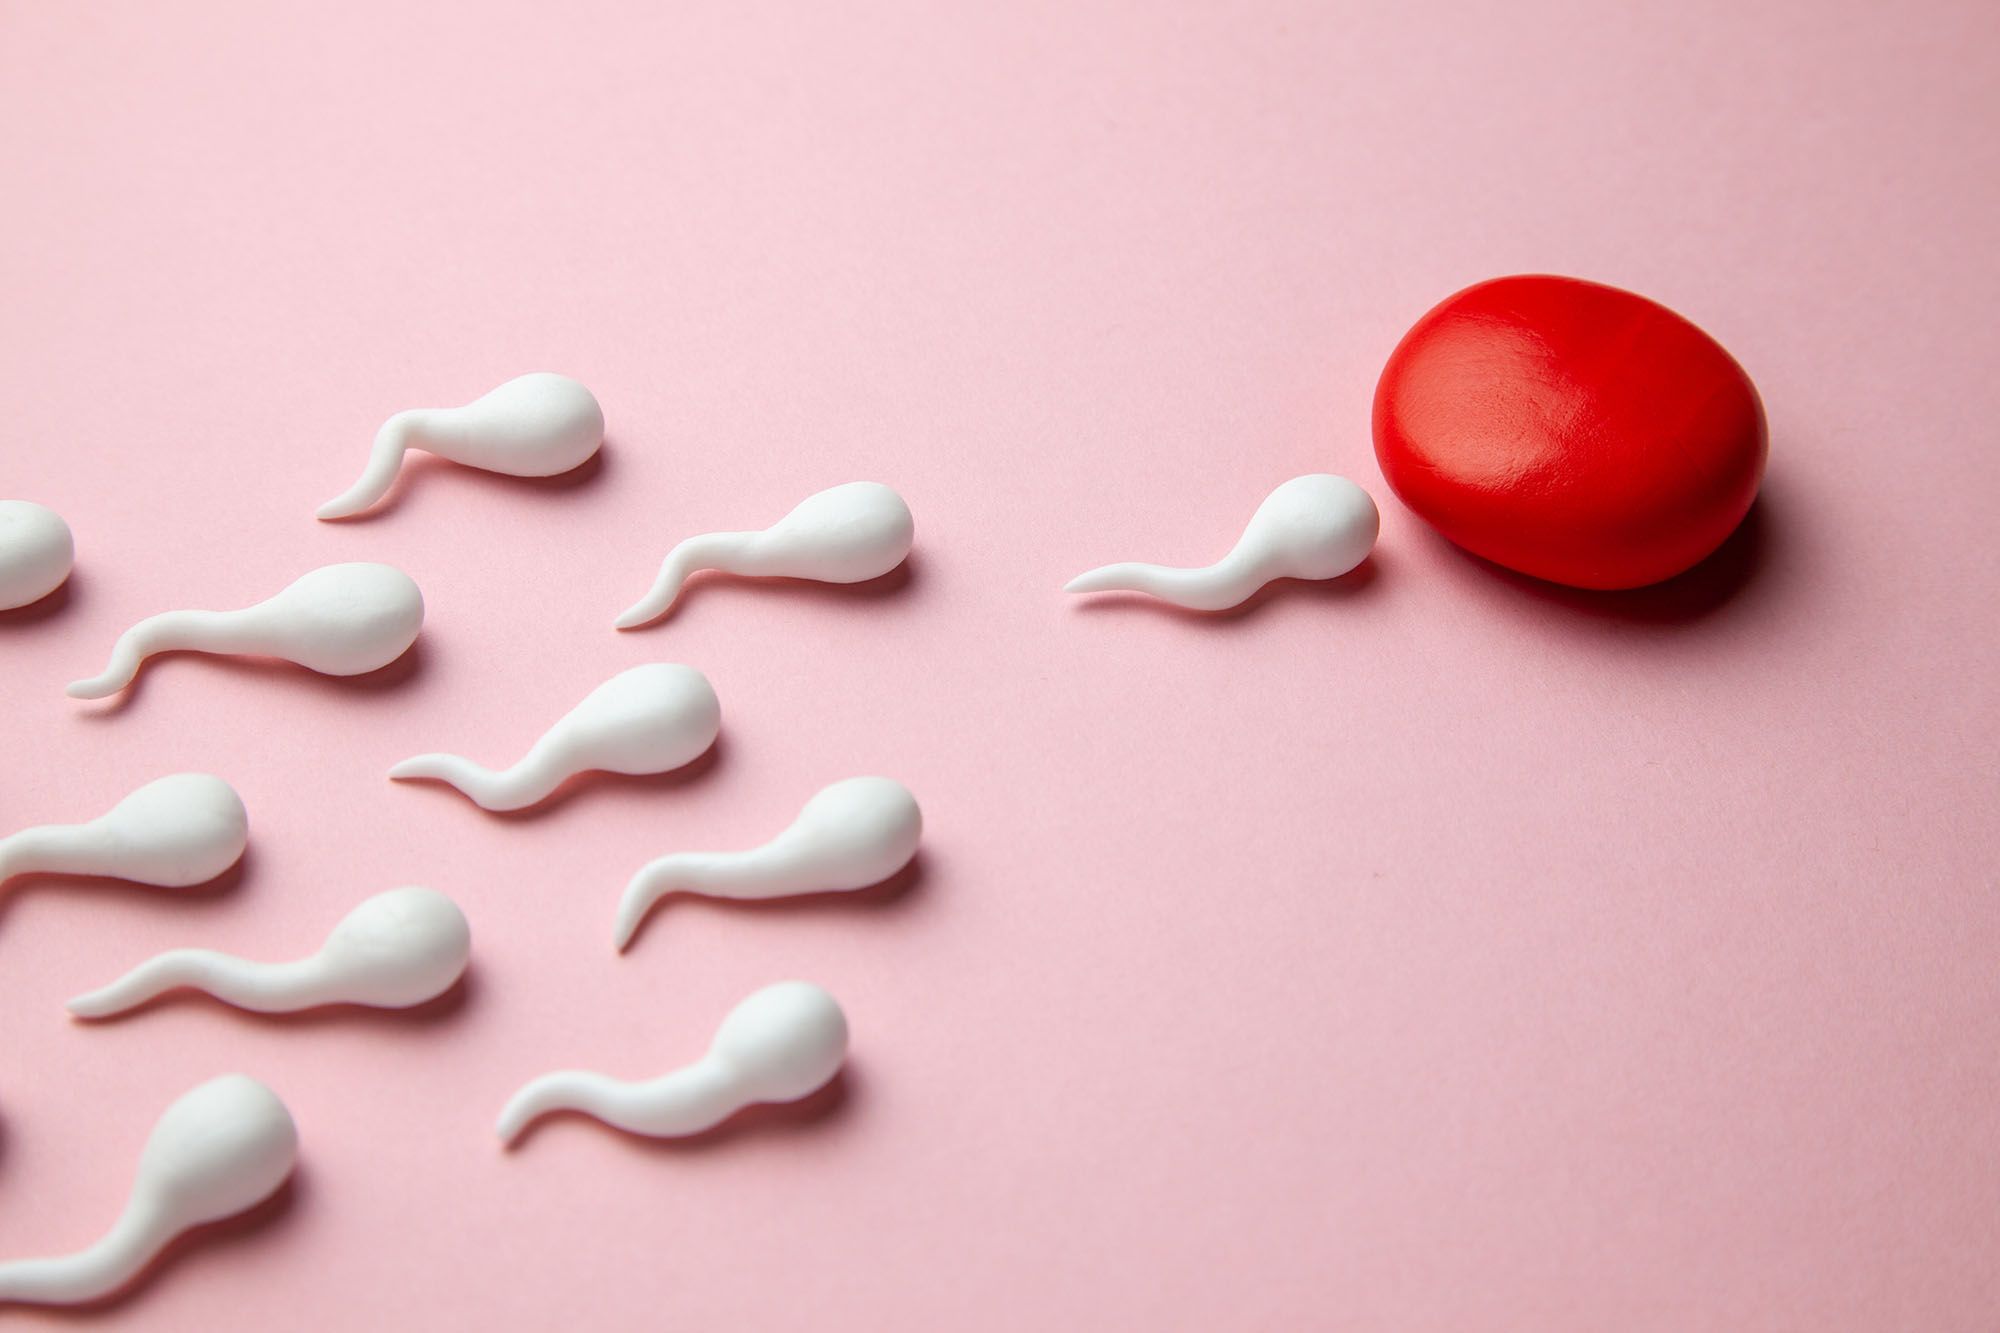 Spermien aus Gummi schwimmen zu einer roten Kugel, die eine Eizelle darstellt